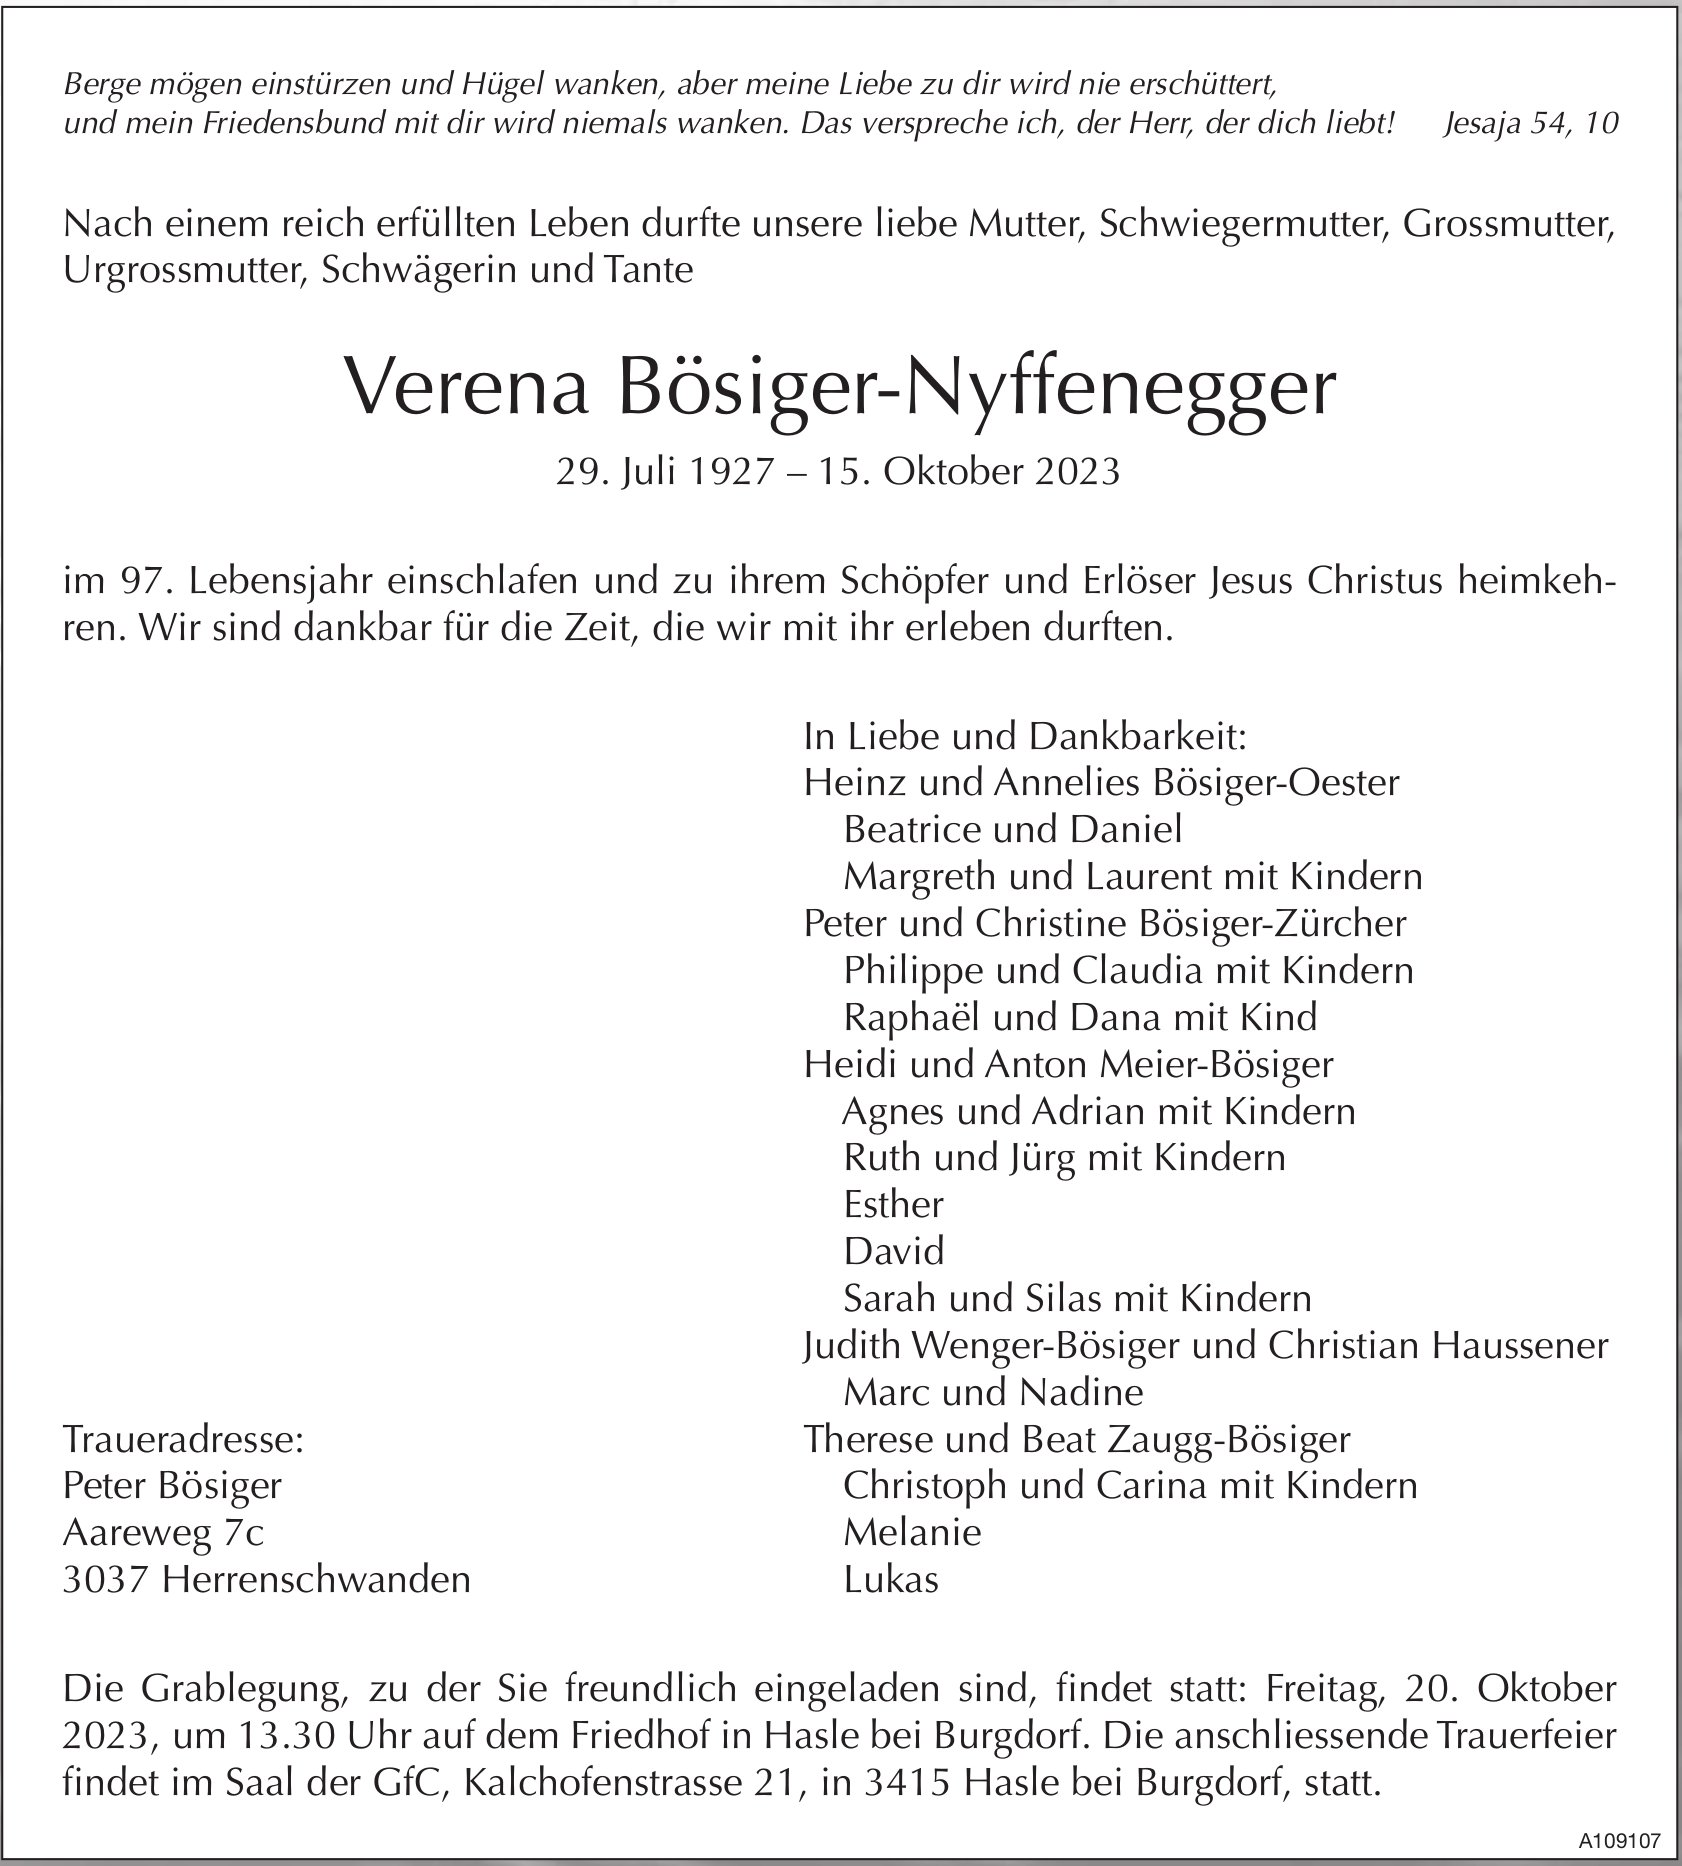 Verena Bösiger-Nyffenegger, Oktober 2023 / TA